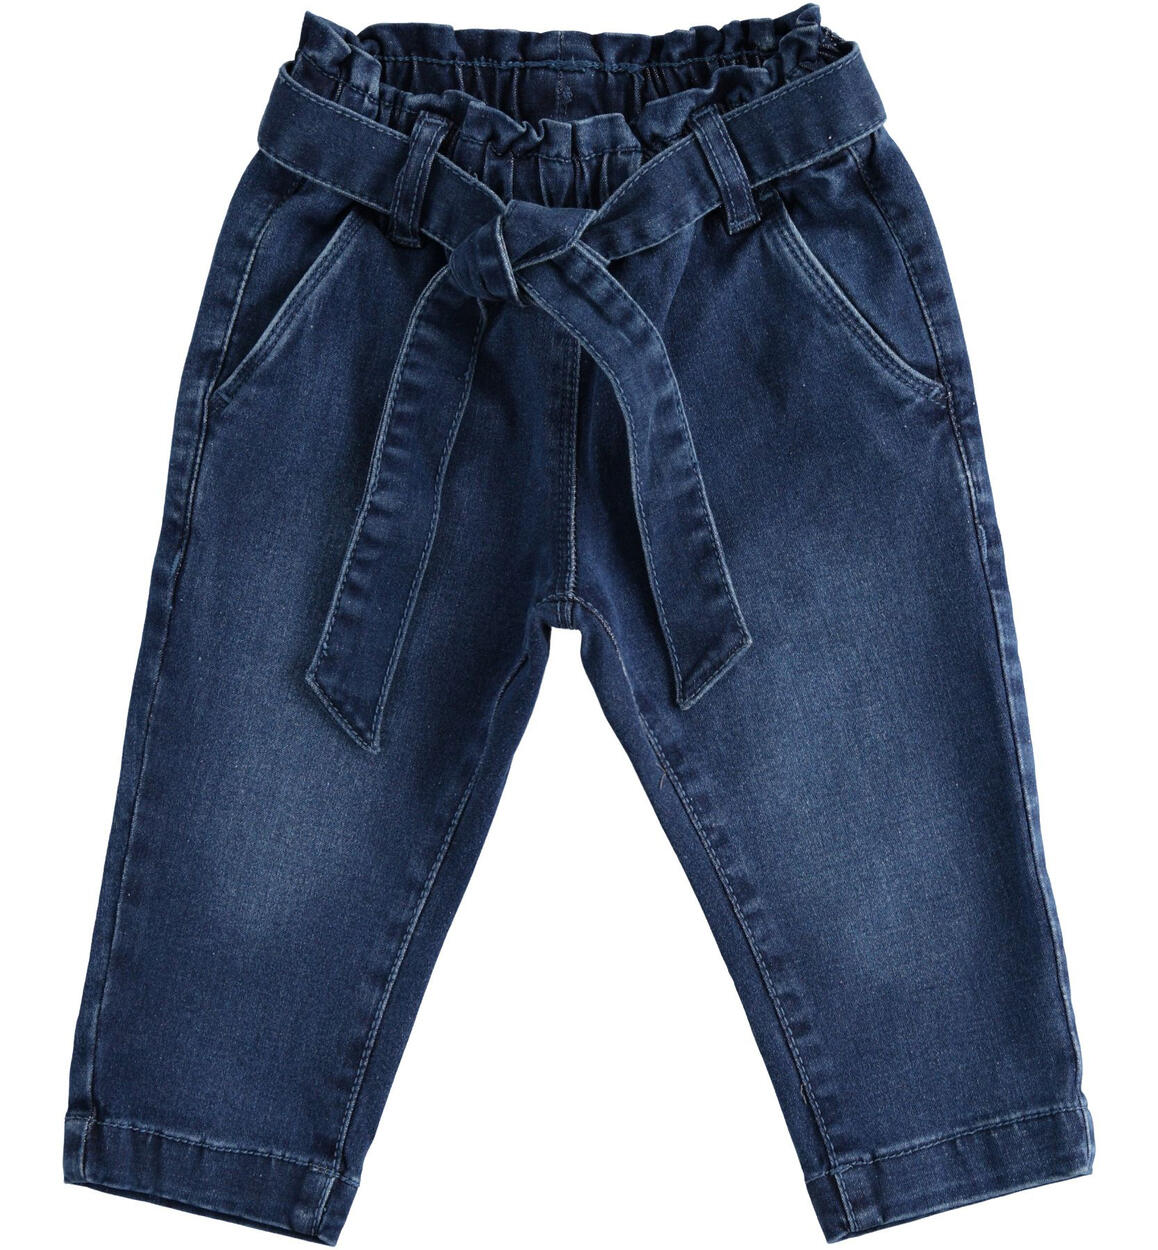 Jeans bambina in cotone stretch - da 9 mesi a 8 anni iDO